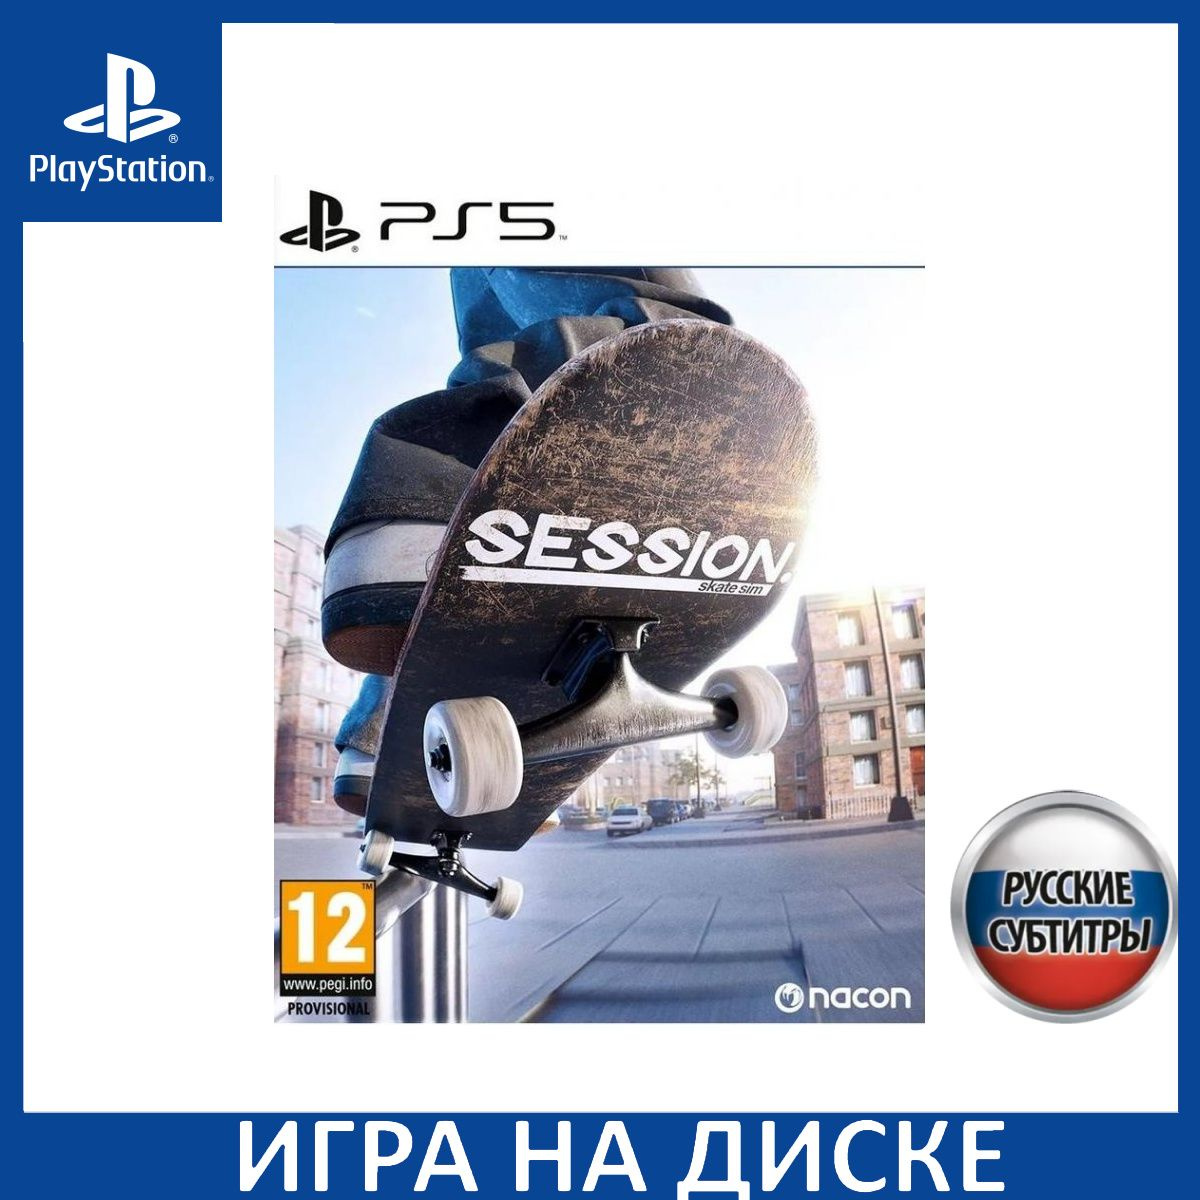 Диск с Игрой Session: Skate Sim Русская Версия (PS5). Новый лицензионный запечатанный диск.